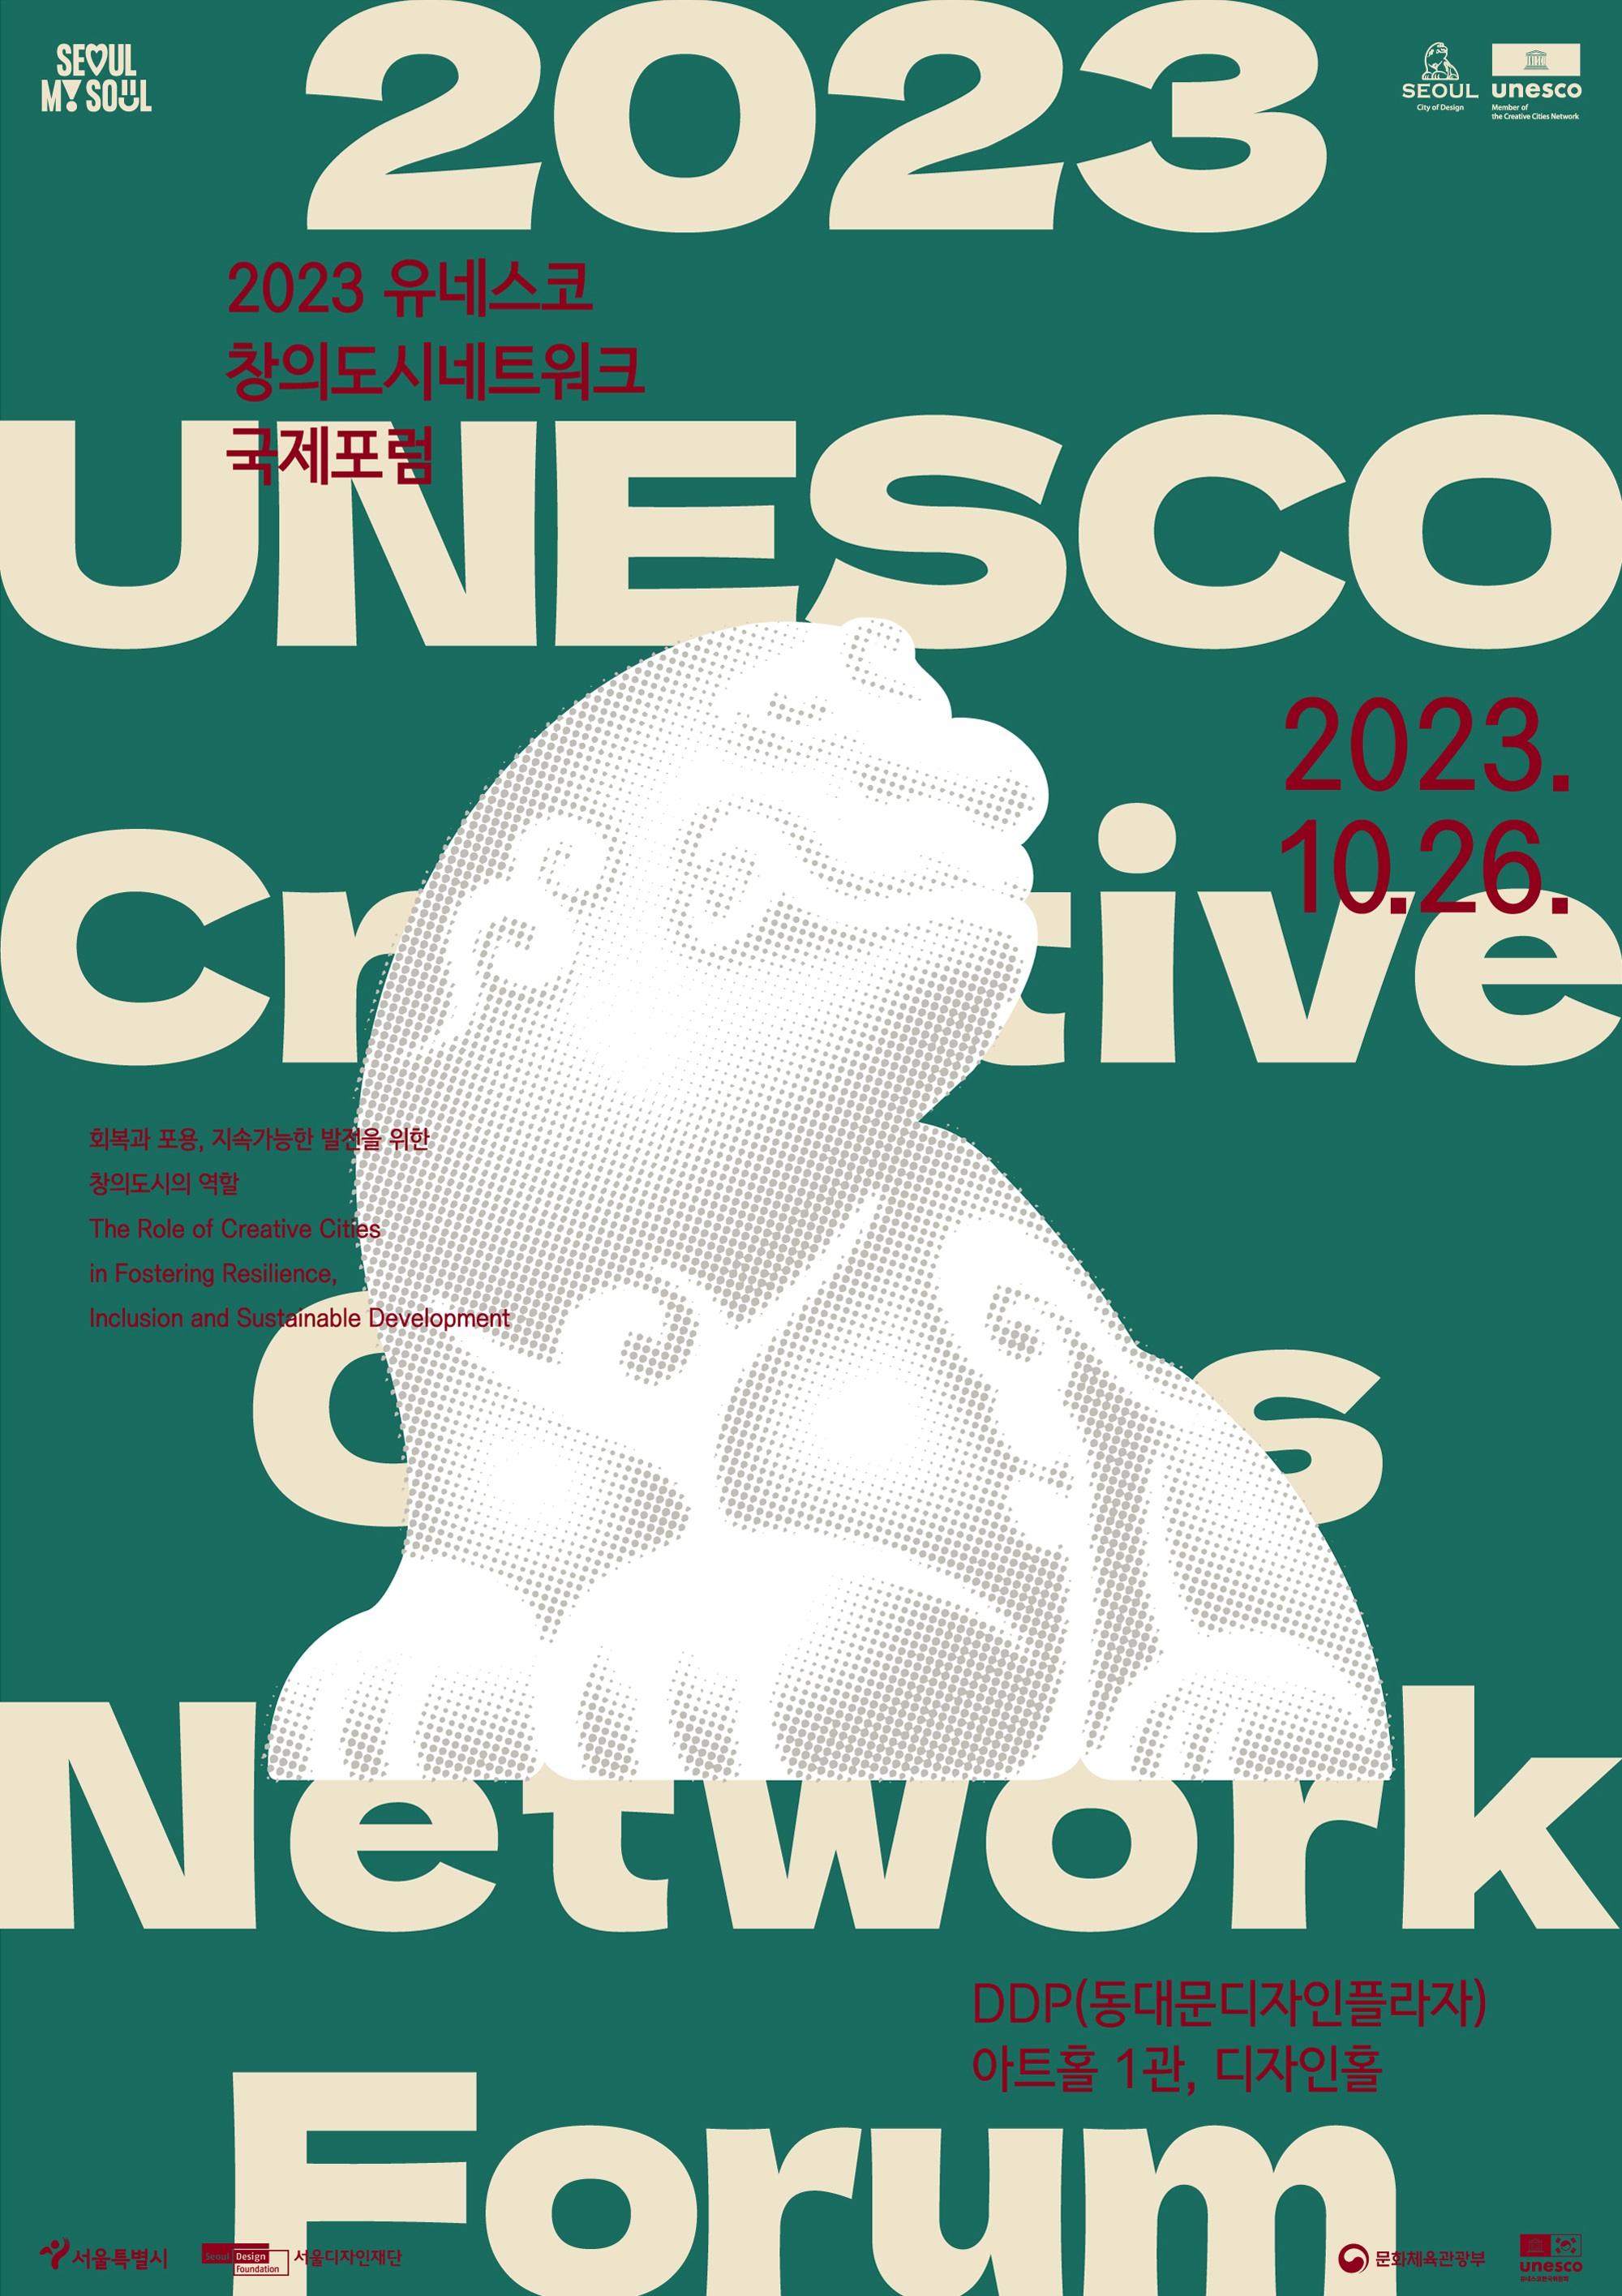 2023 유네스코 창의도시네트워크 포스터.jpg